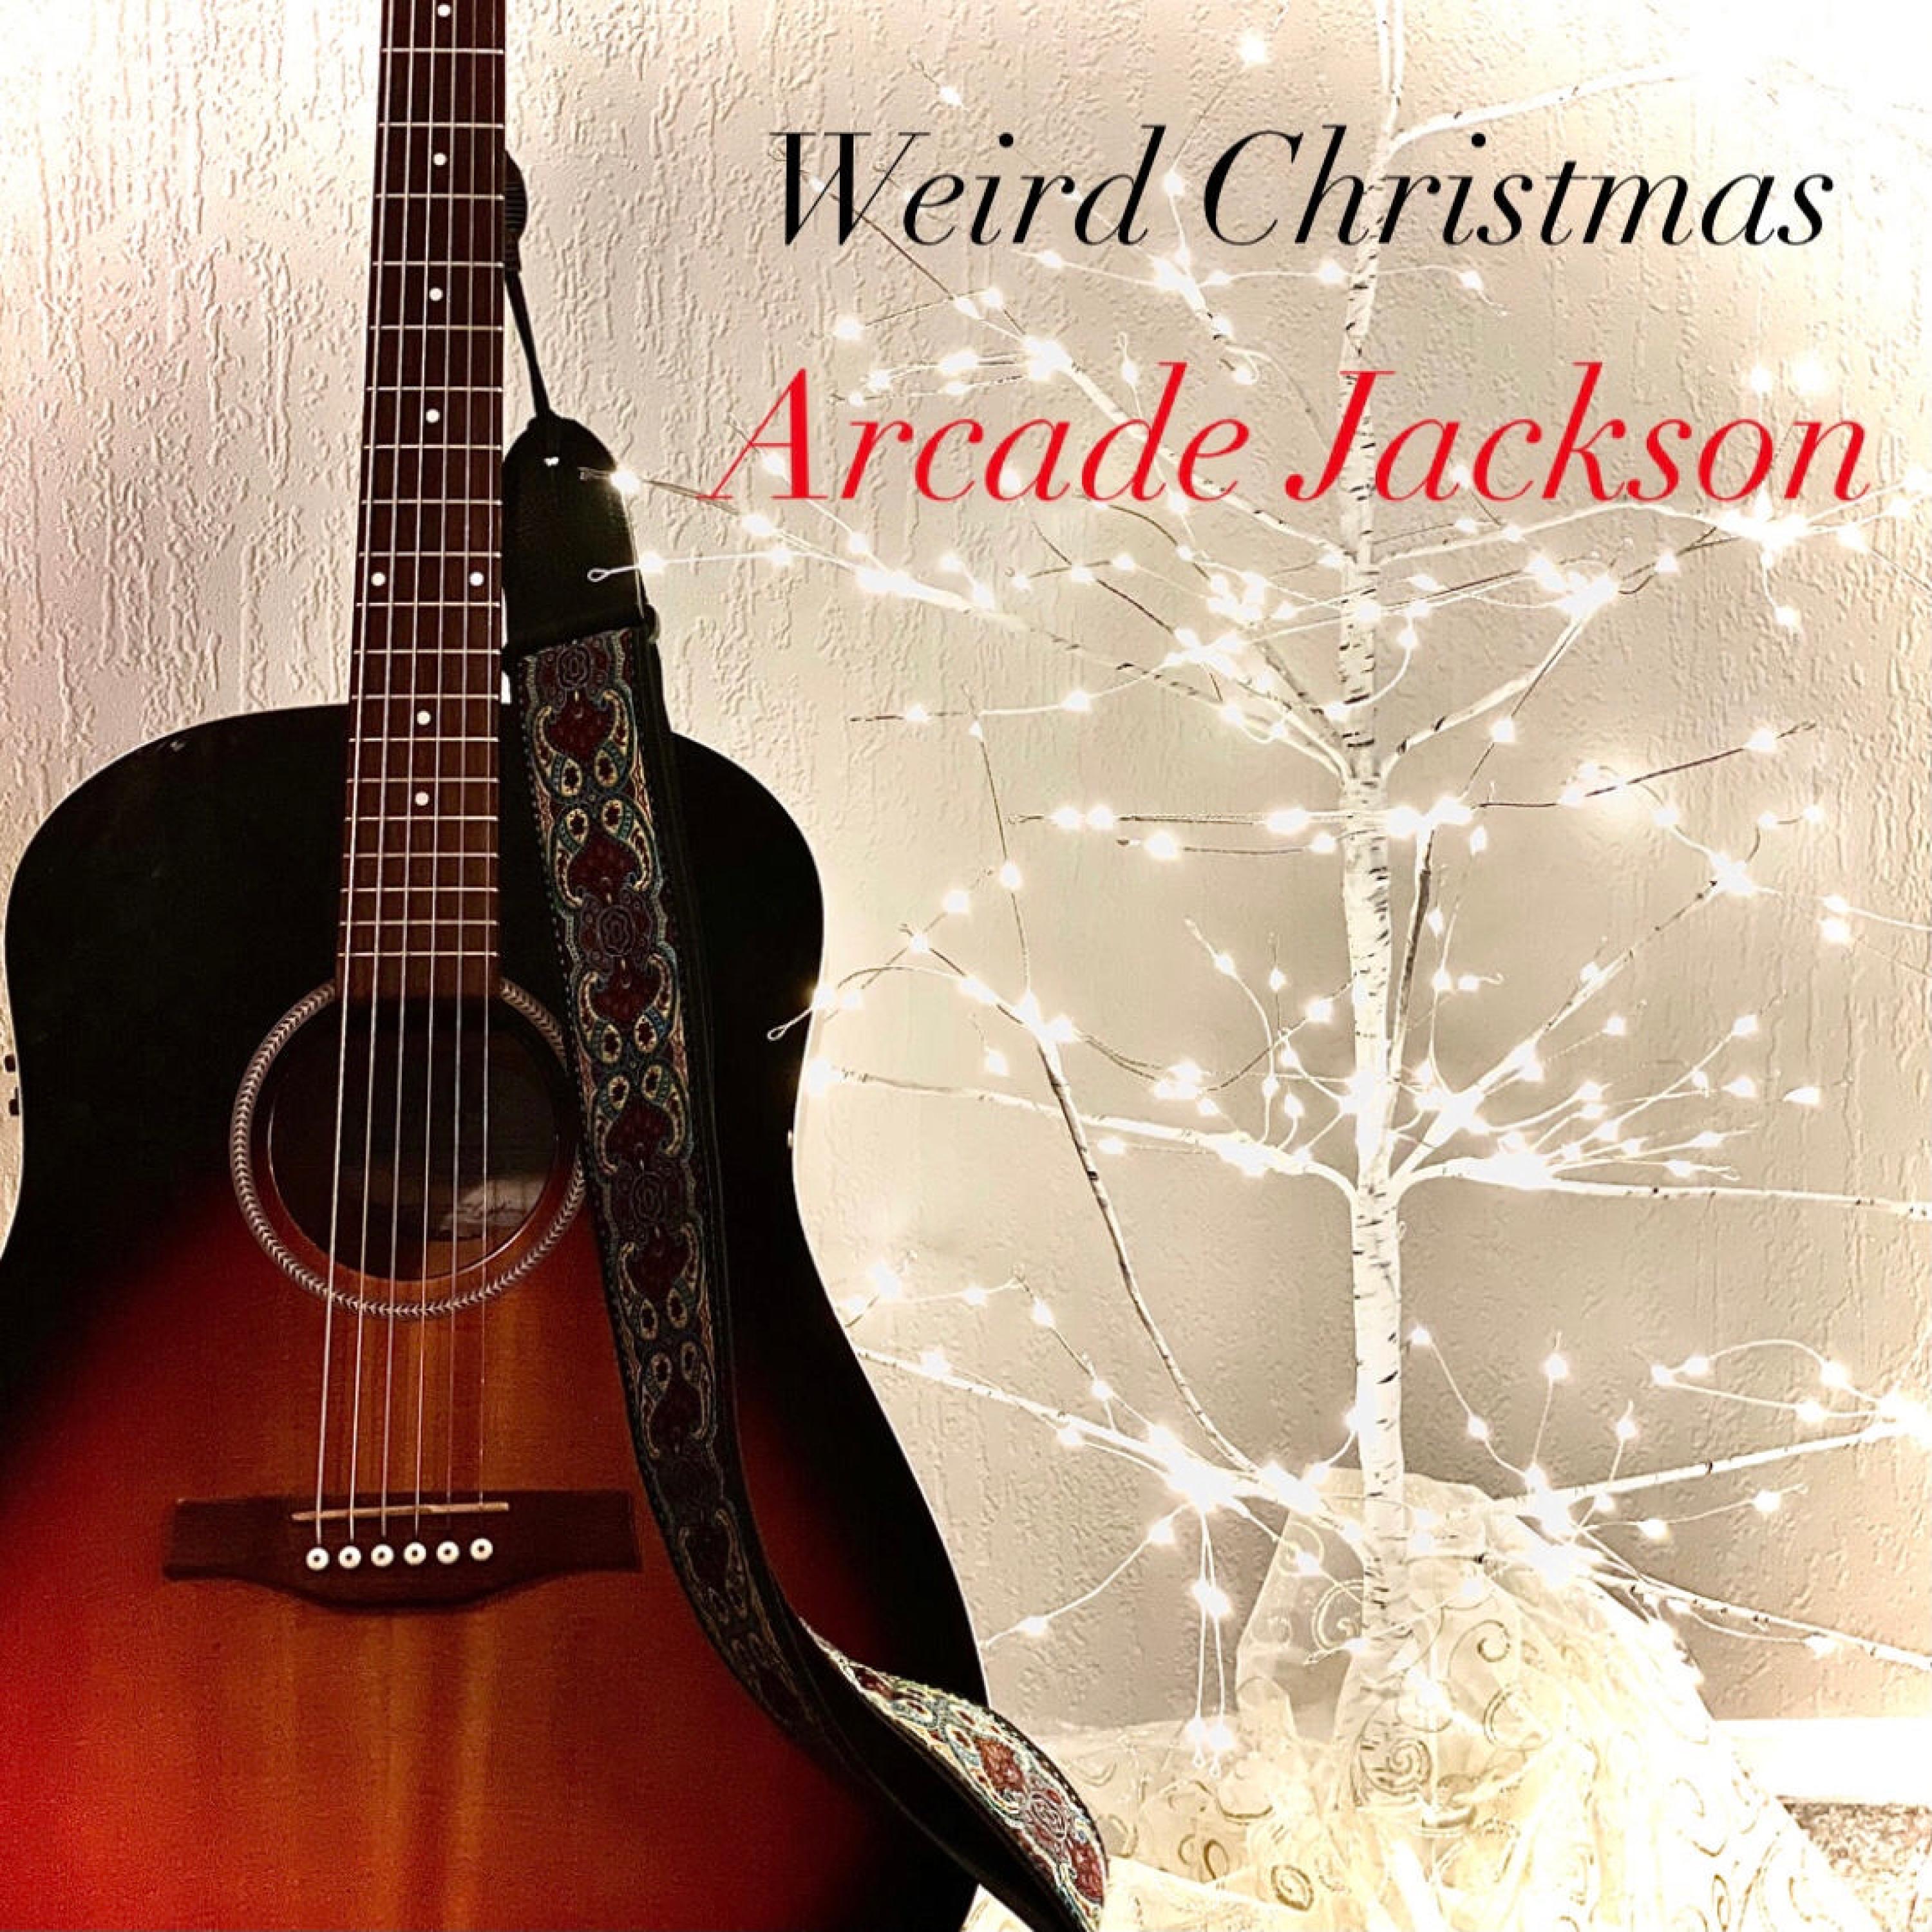 Arcade Jackson - Weird Christmas